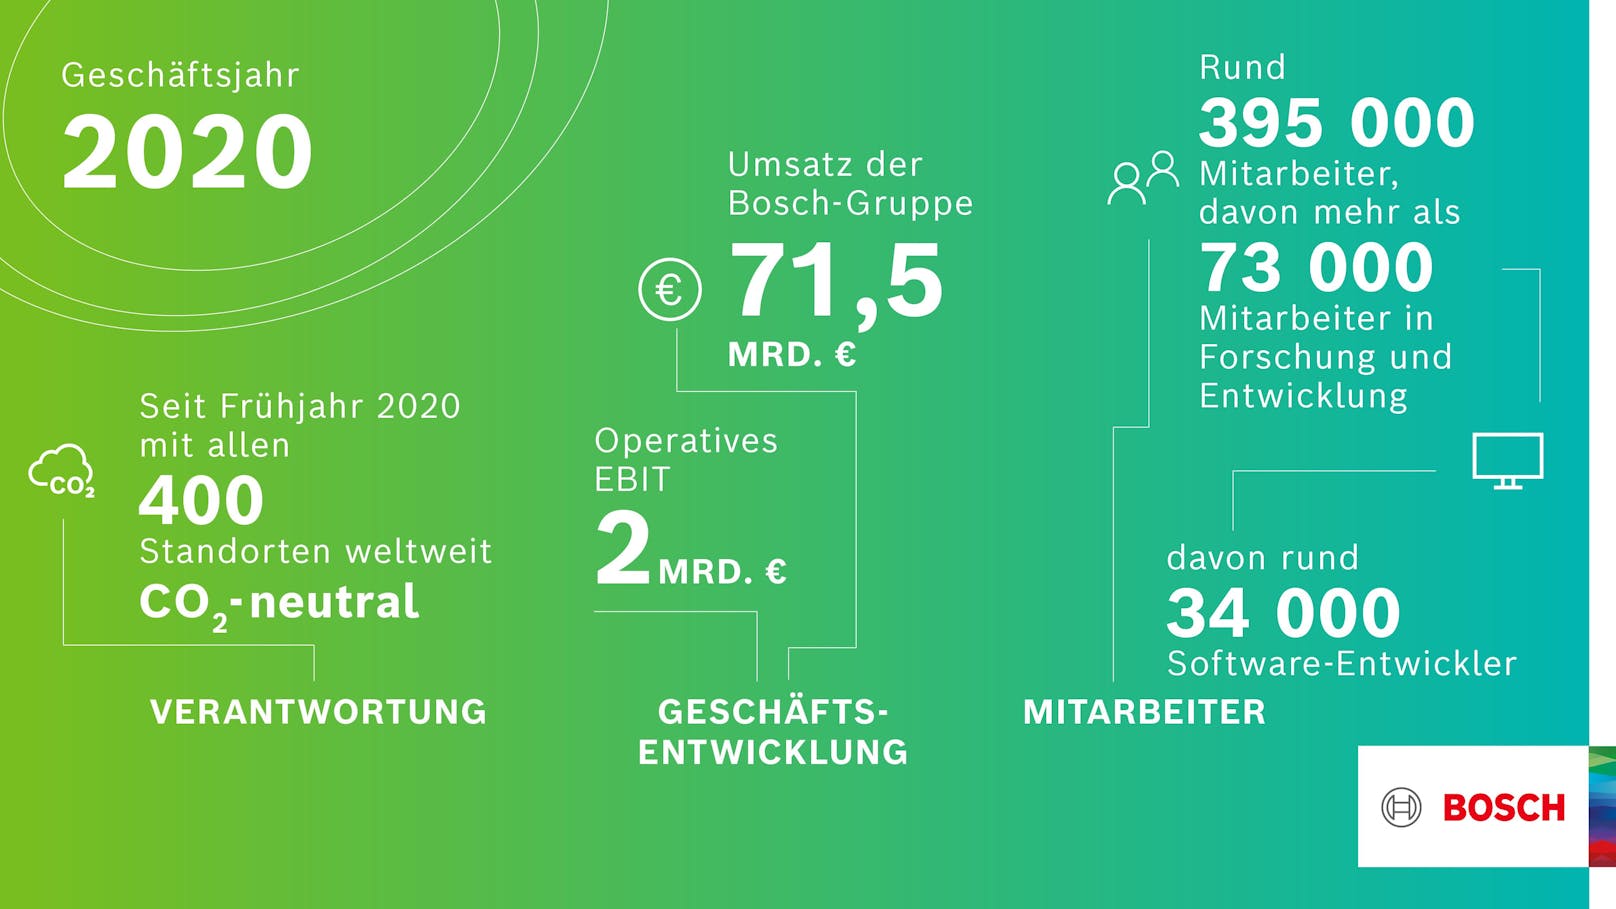 Bilanz 2020: Geschäftsjahr besser als erwartet, sagt Bosch.